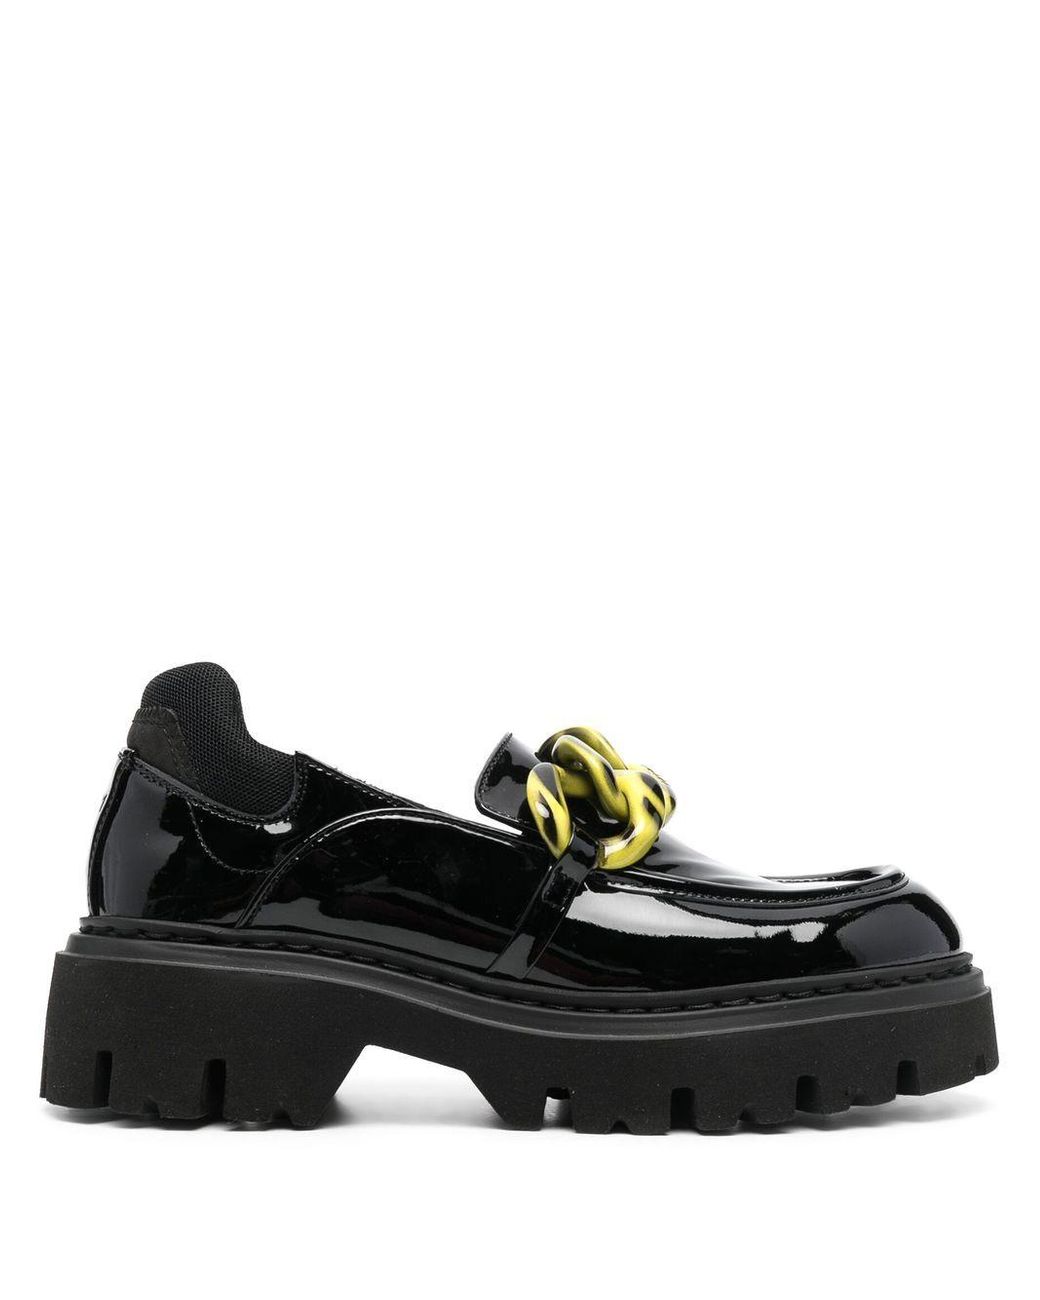 Mocasines de LAutre Chose de color Negro sandalias y chanclas de Mocasines Mujer Zapatos de Zapatos planos 